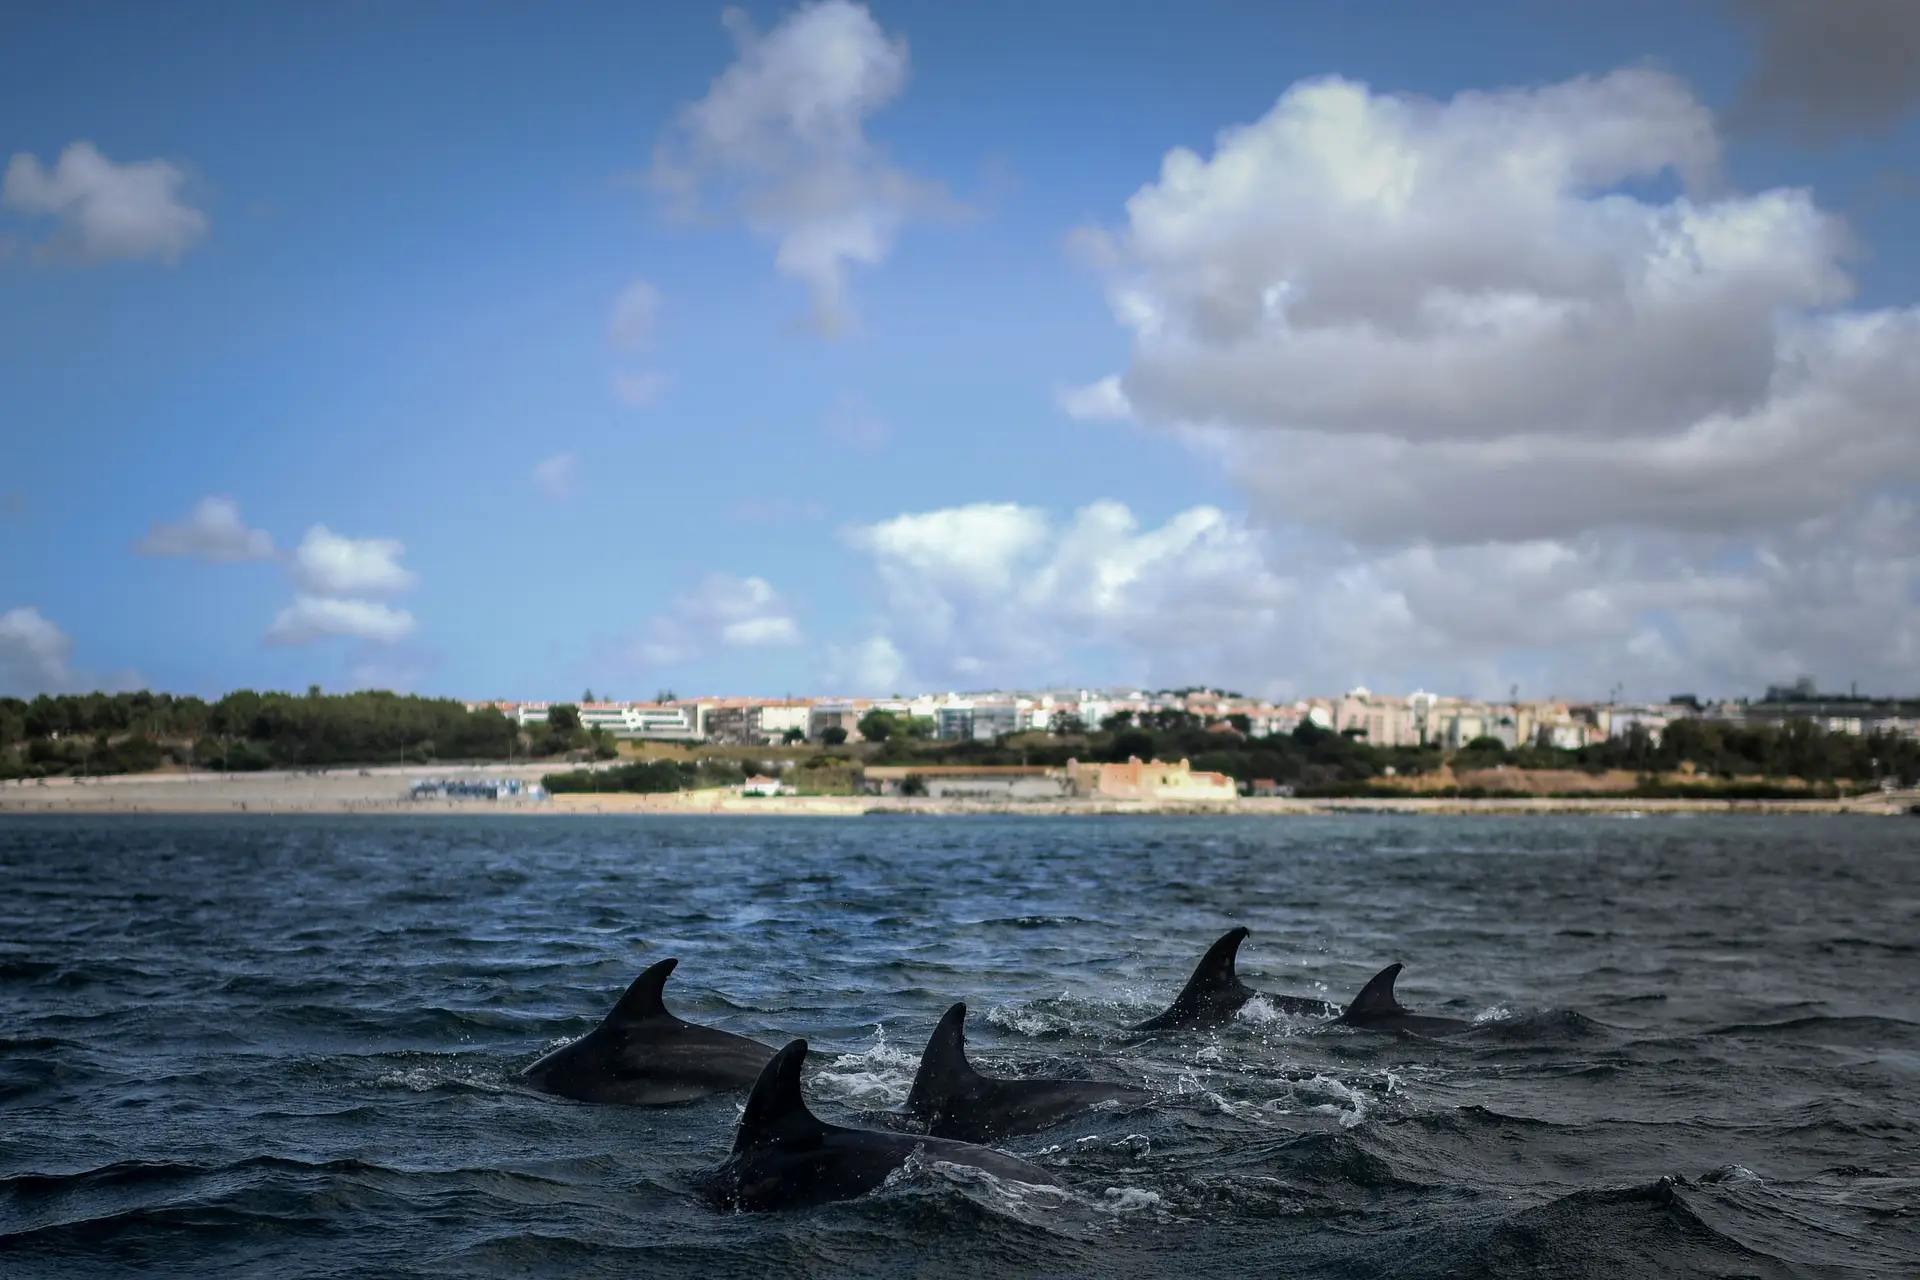 Golfinhos (e até uma baleia) voltam a aparecer no rio Tejo